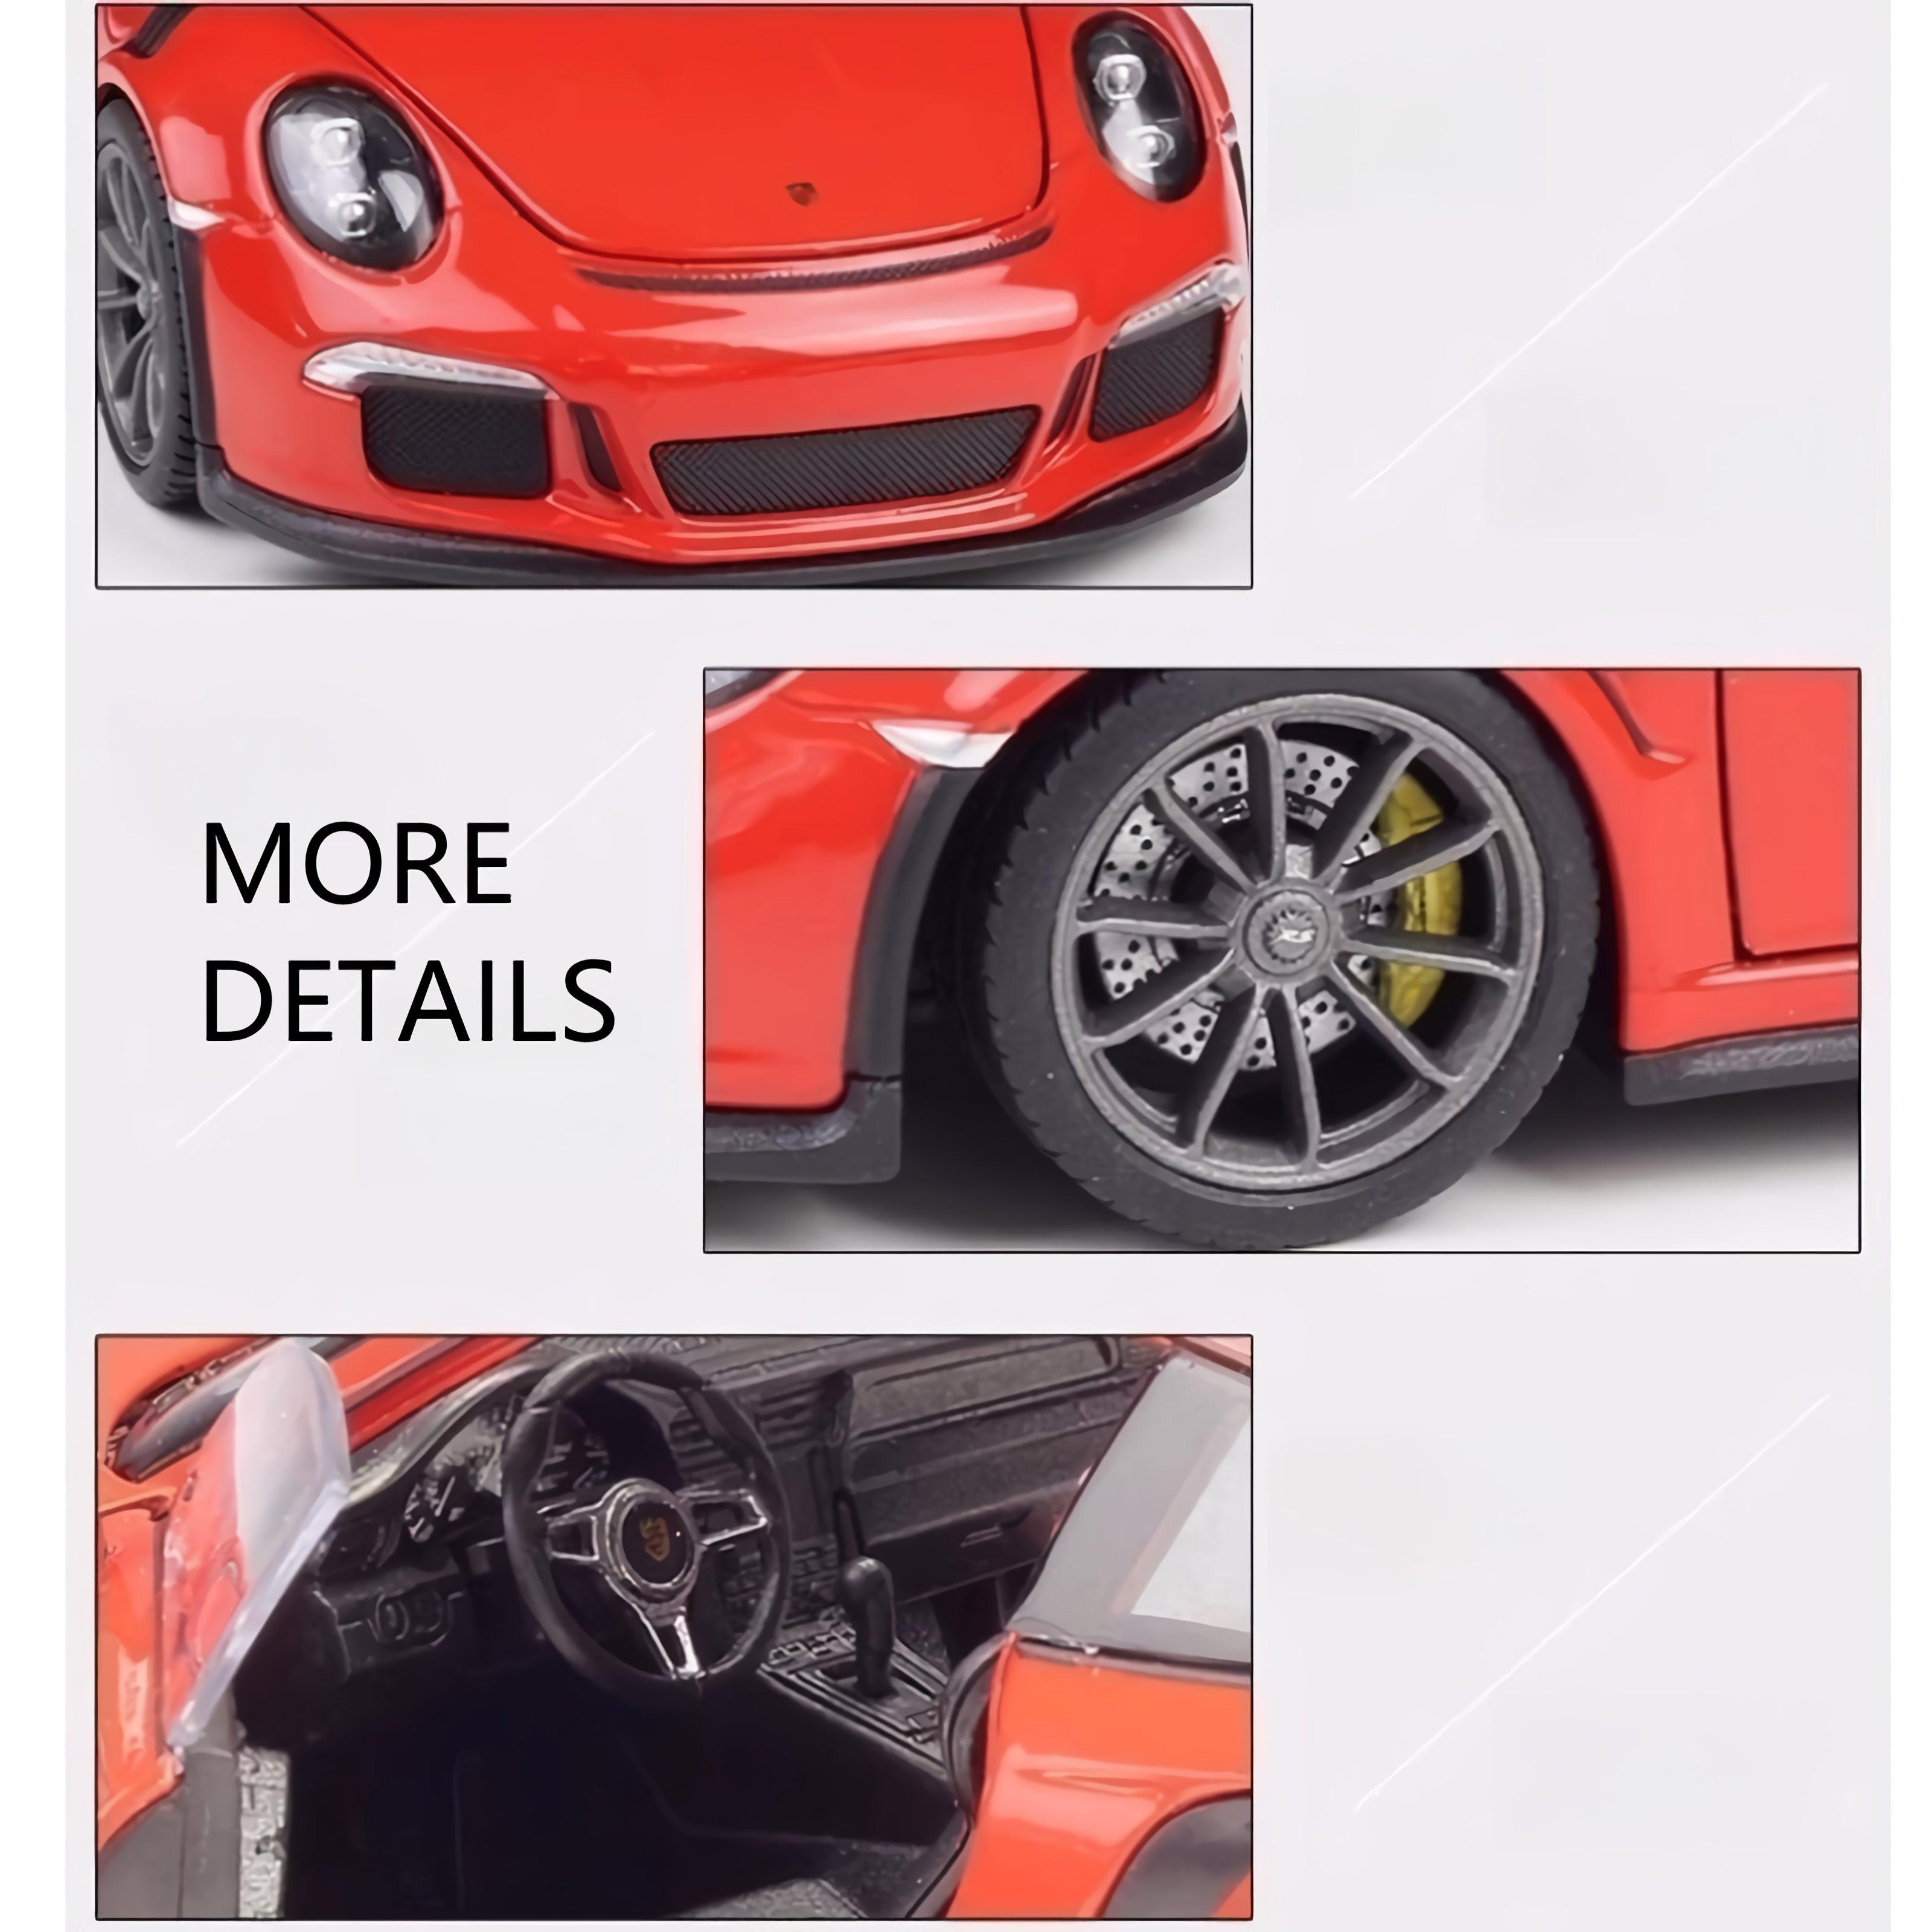 1:24 Scale Porsche 911GT3RS Genuine authorization Alloy Die-cast Model Car - PANSEKtoy